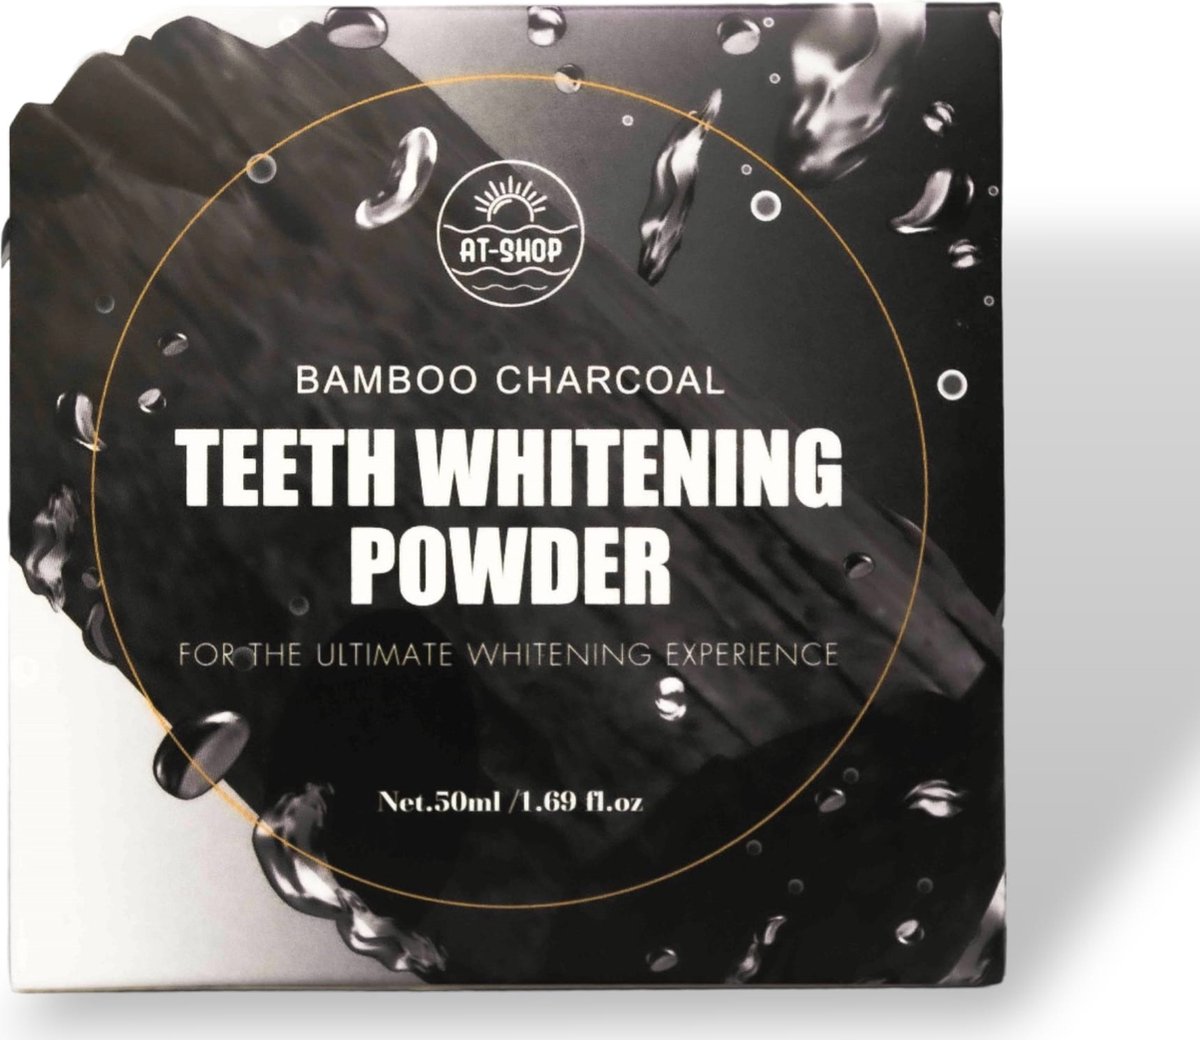 AT-Shop - Teeth whitening Powder - Tandenbleker - Witte tanden - Tandenbleken - tandenbleek